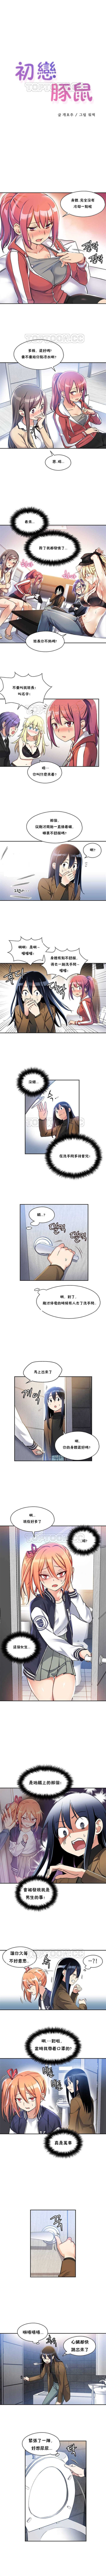 初恋豚鼠 1-30 中文翻译（更新中） page 8 full